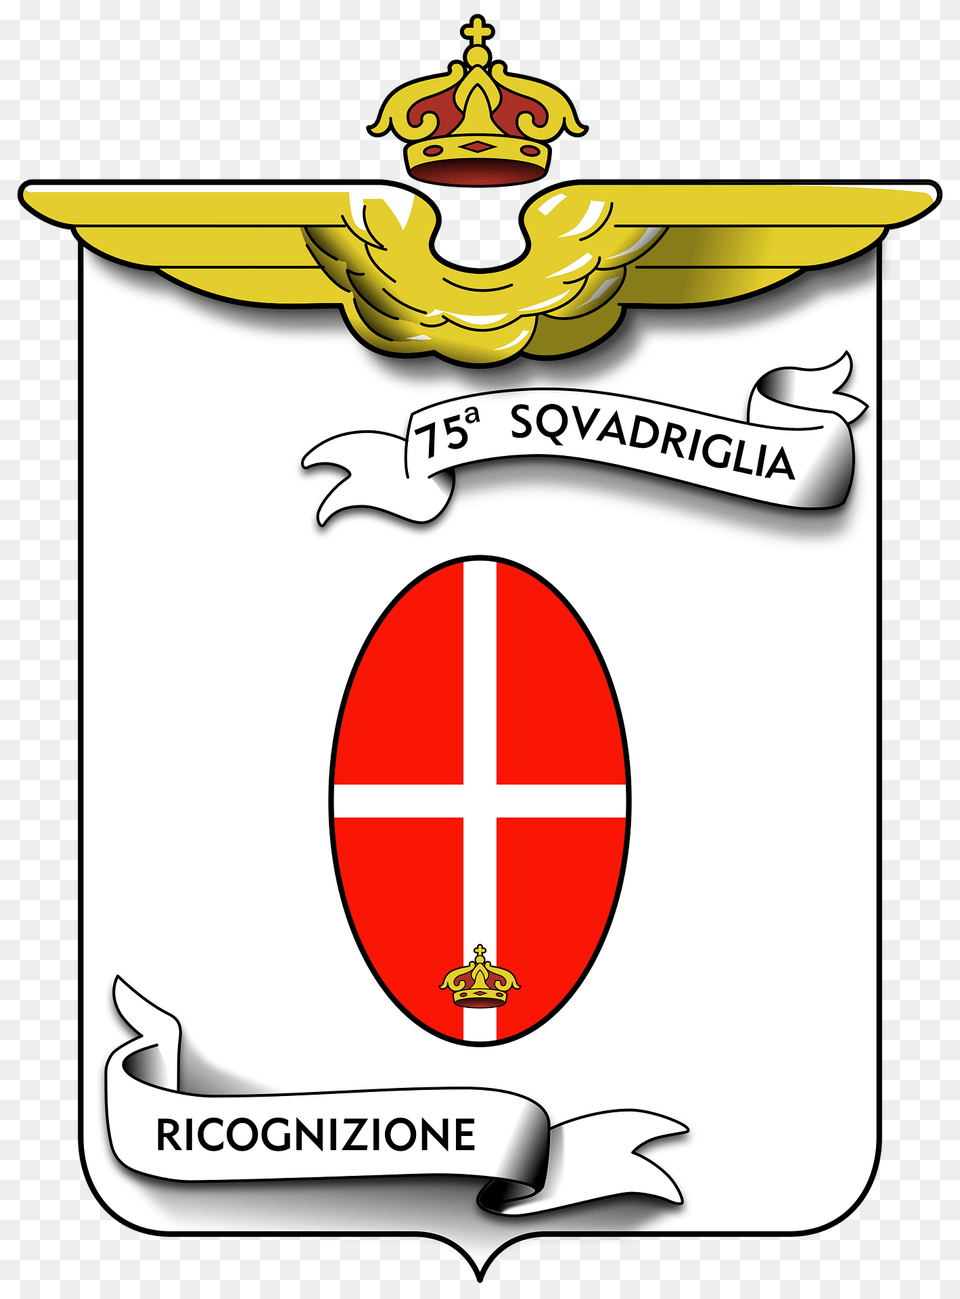 Coa 75 Squadriglia Ricognizione Clipart, Logo, Symbol Png Image